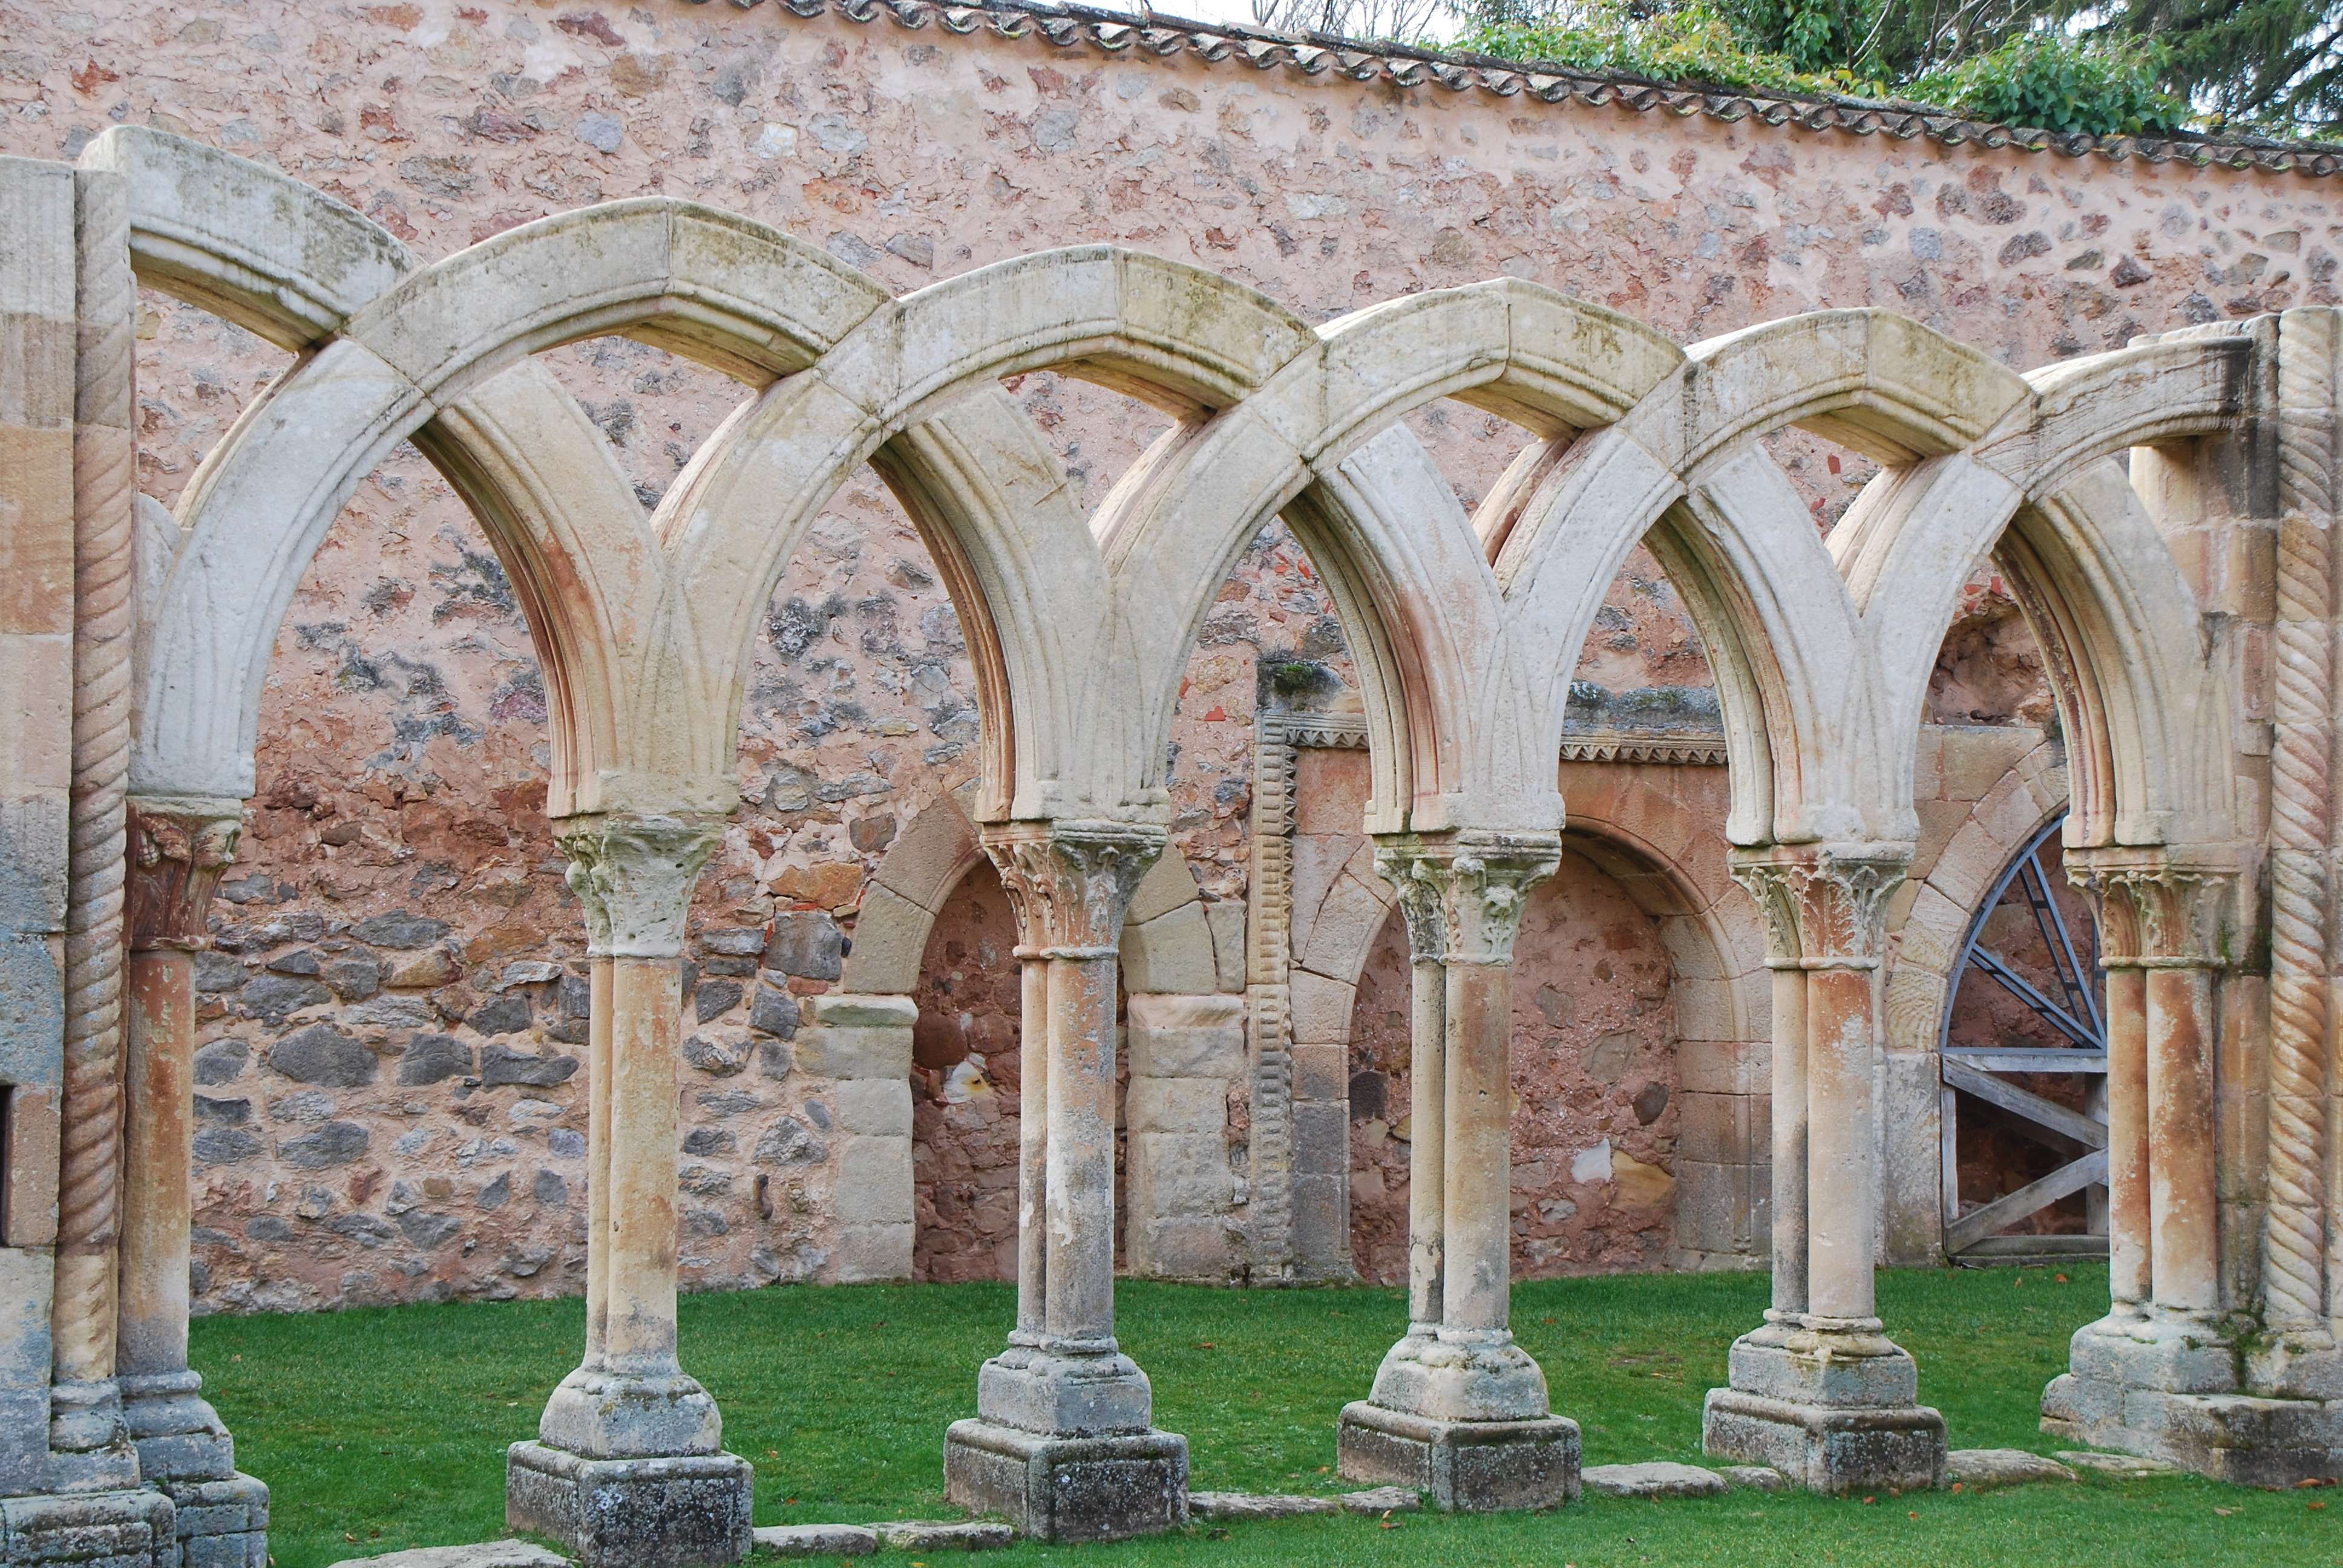 Monasterio de San Juan de Duero. Un enigma - Blogs de España - Monasterio de San Juan de Duero (10)